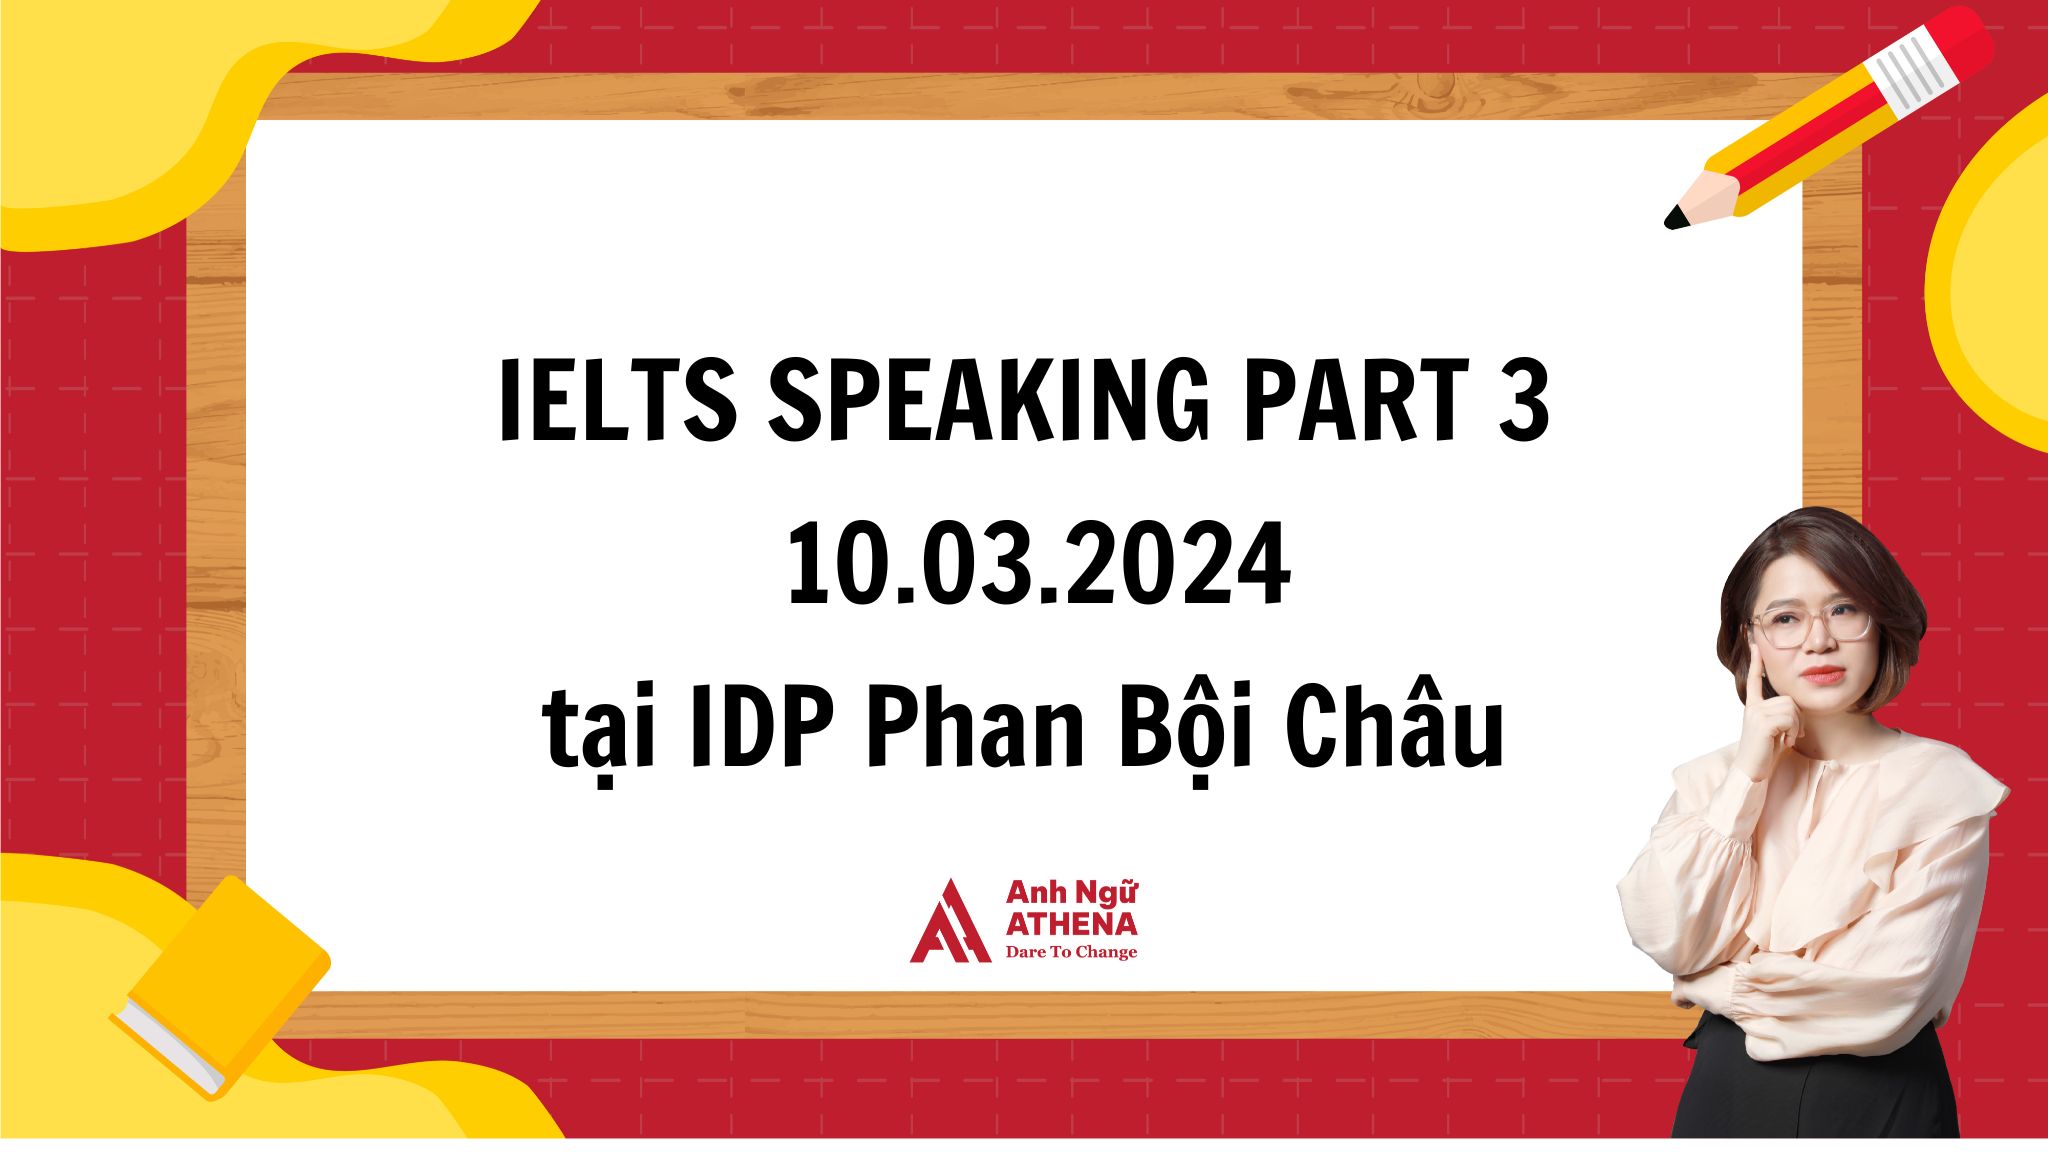 Giải đề chi tiết IELTS Speaking Part 3 - 10.03.2024 tại IDP Phan Bội Châu